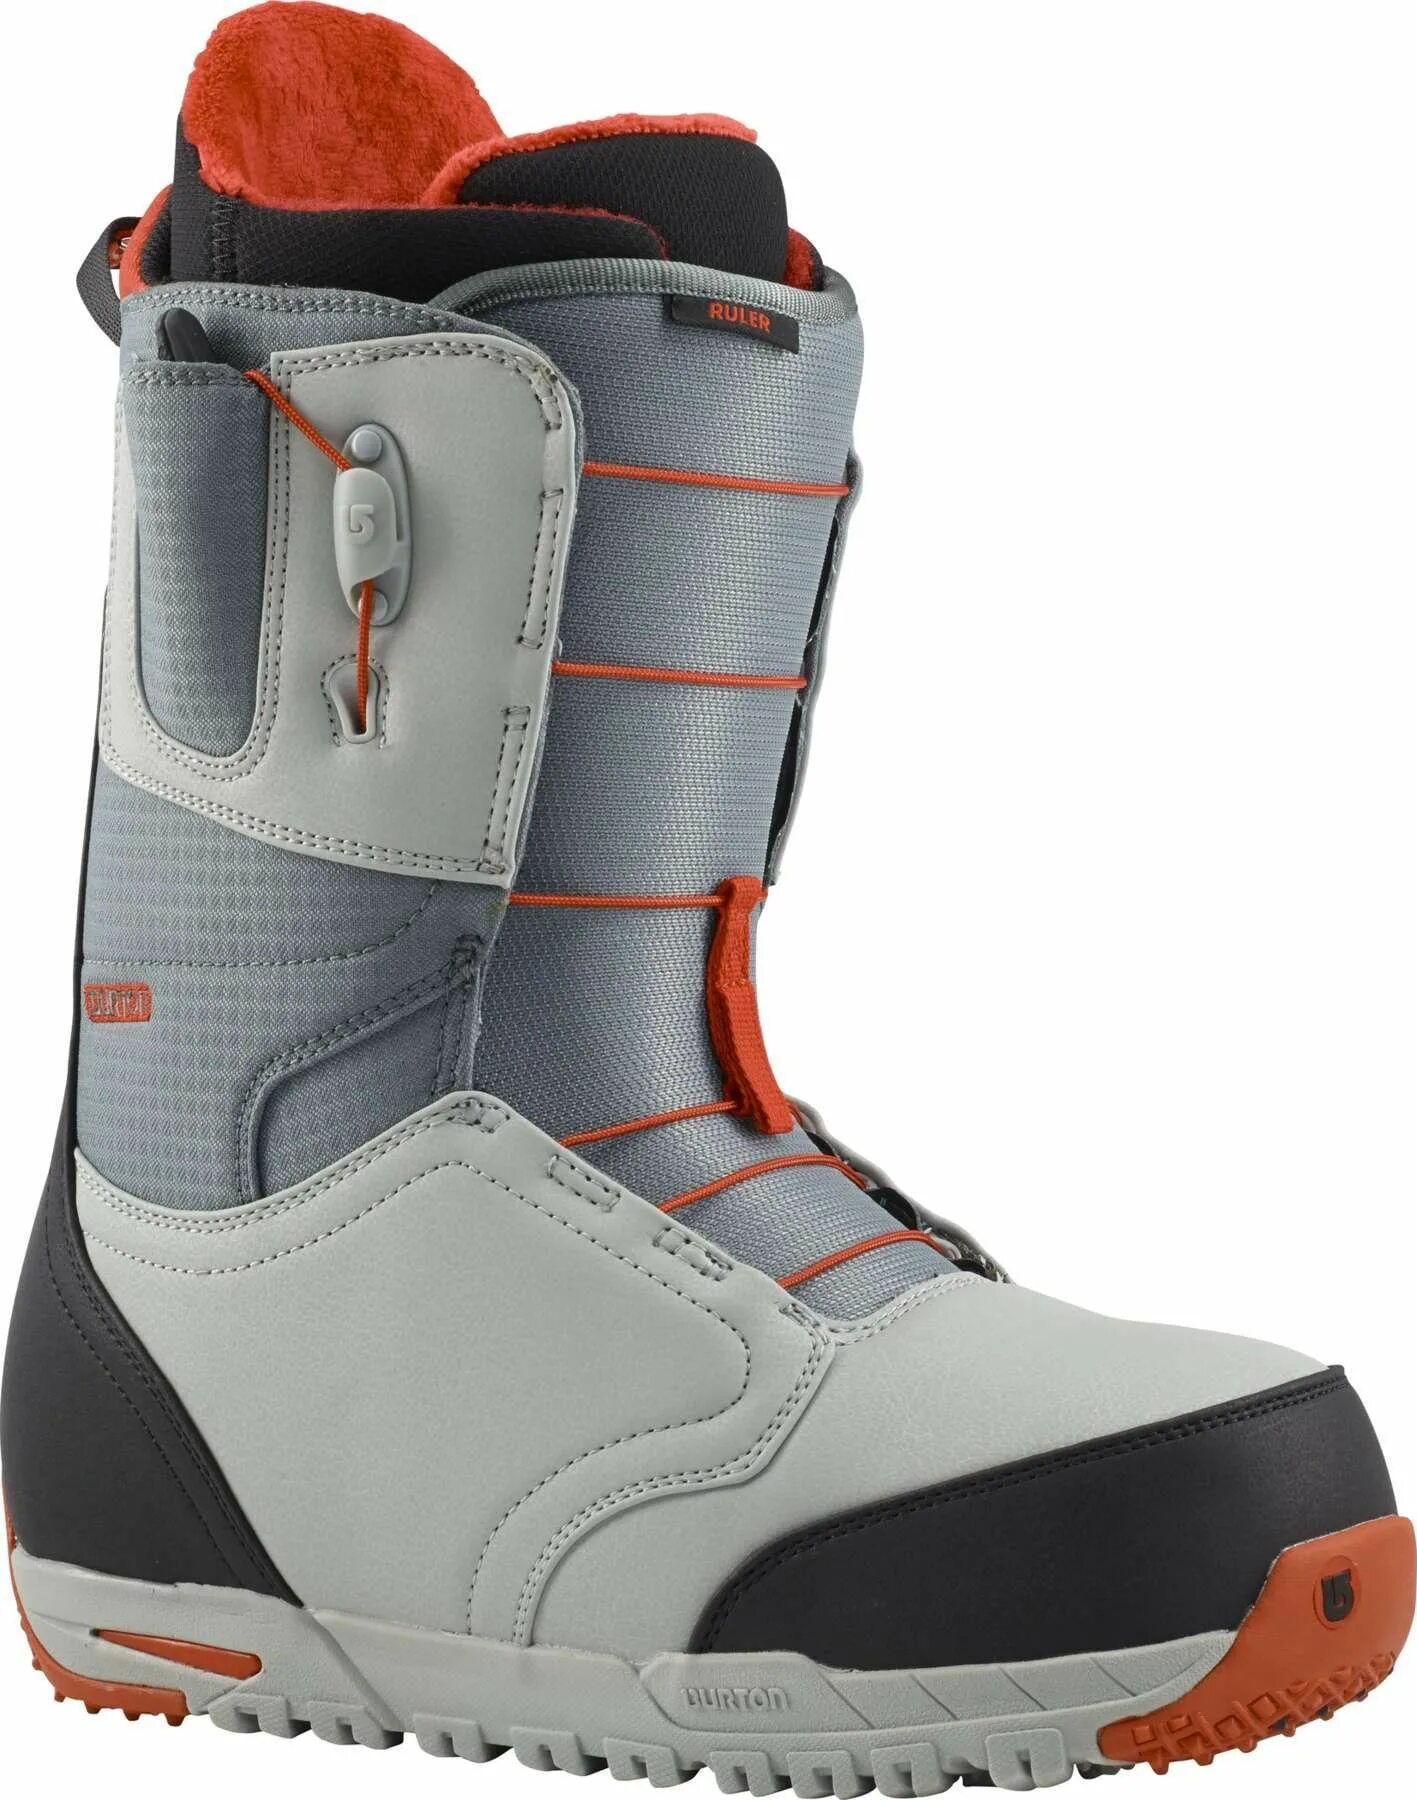 Ботинки сноубордические мужские Burton Ruler. Сноубордические ботинки Burton Snowboard Boots 2018/2020. Ботинки для сноуборда Burton Ruler 2014. Сноуборд ботинки Бертона Руллер.